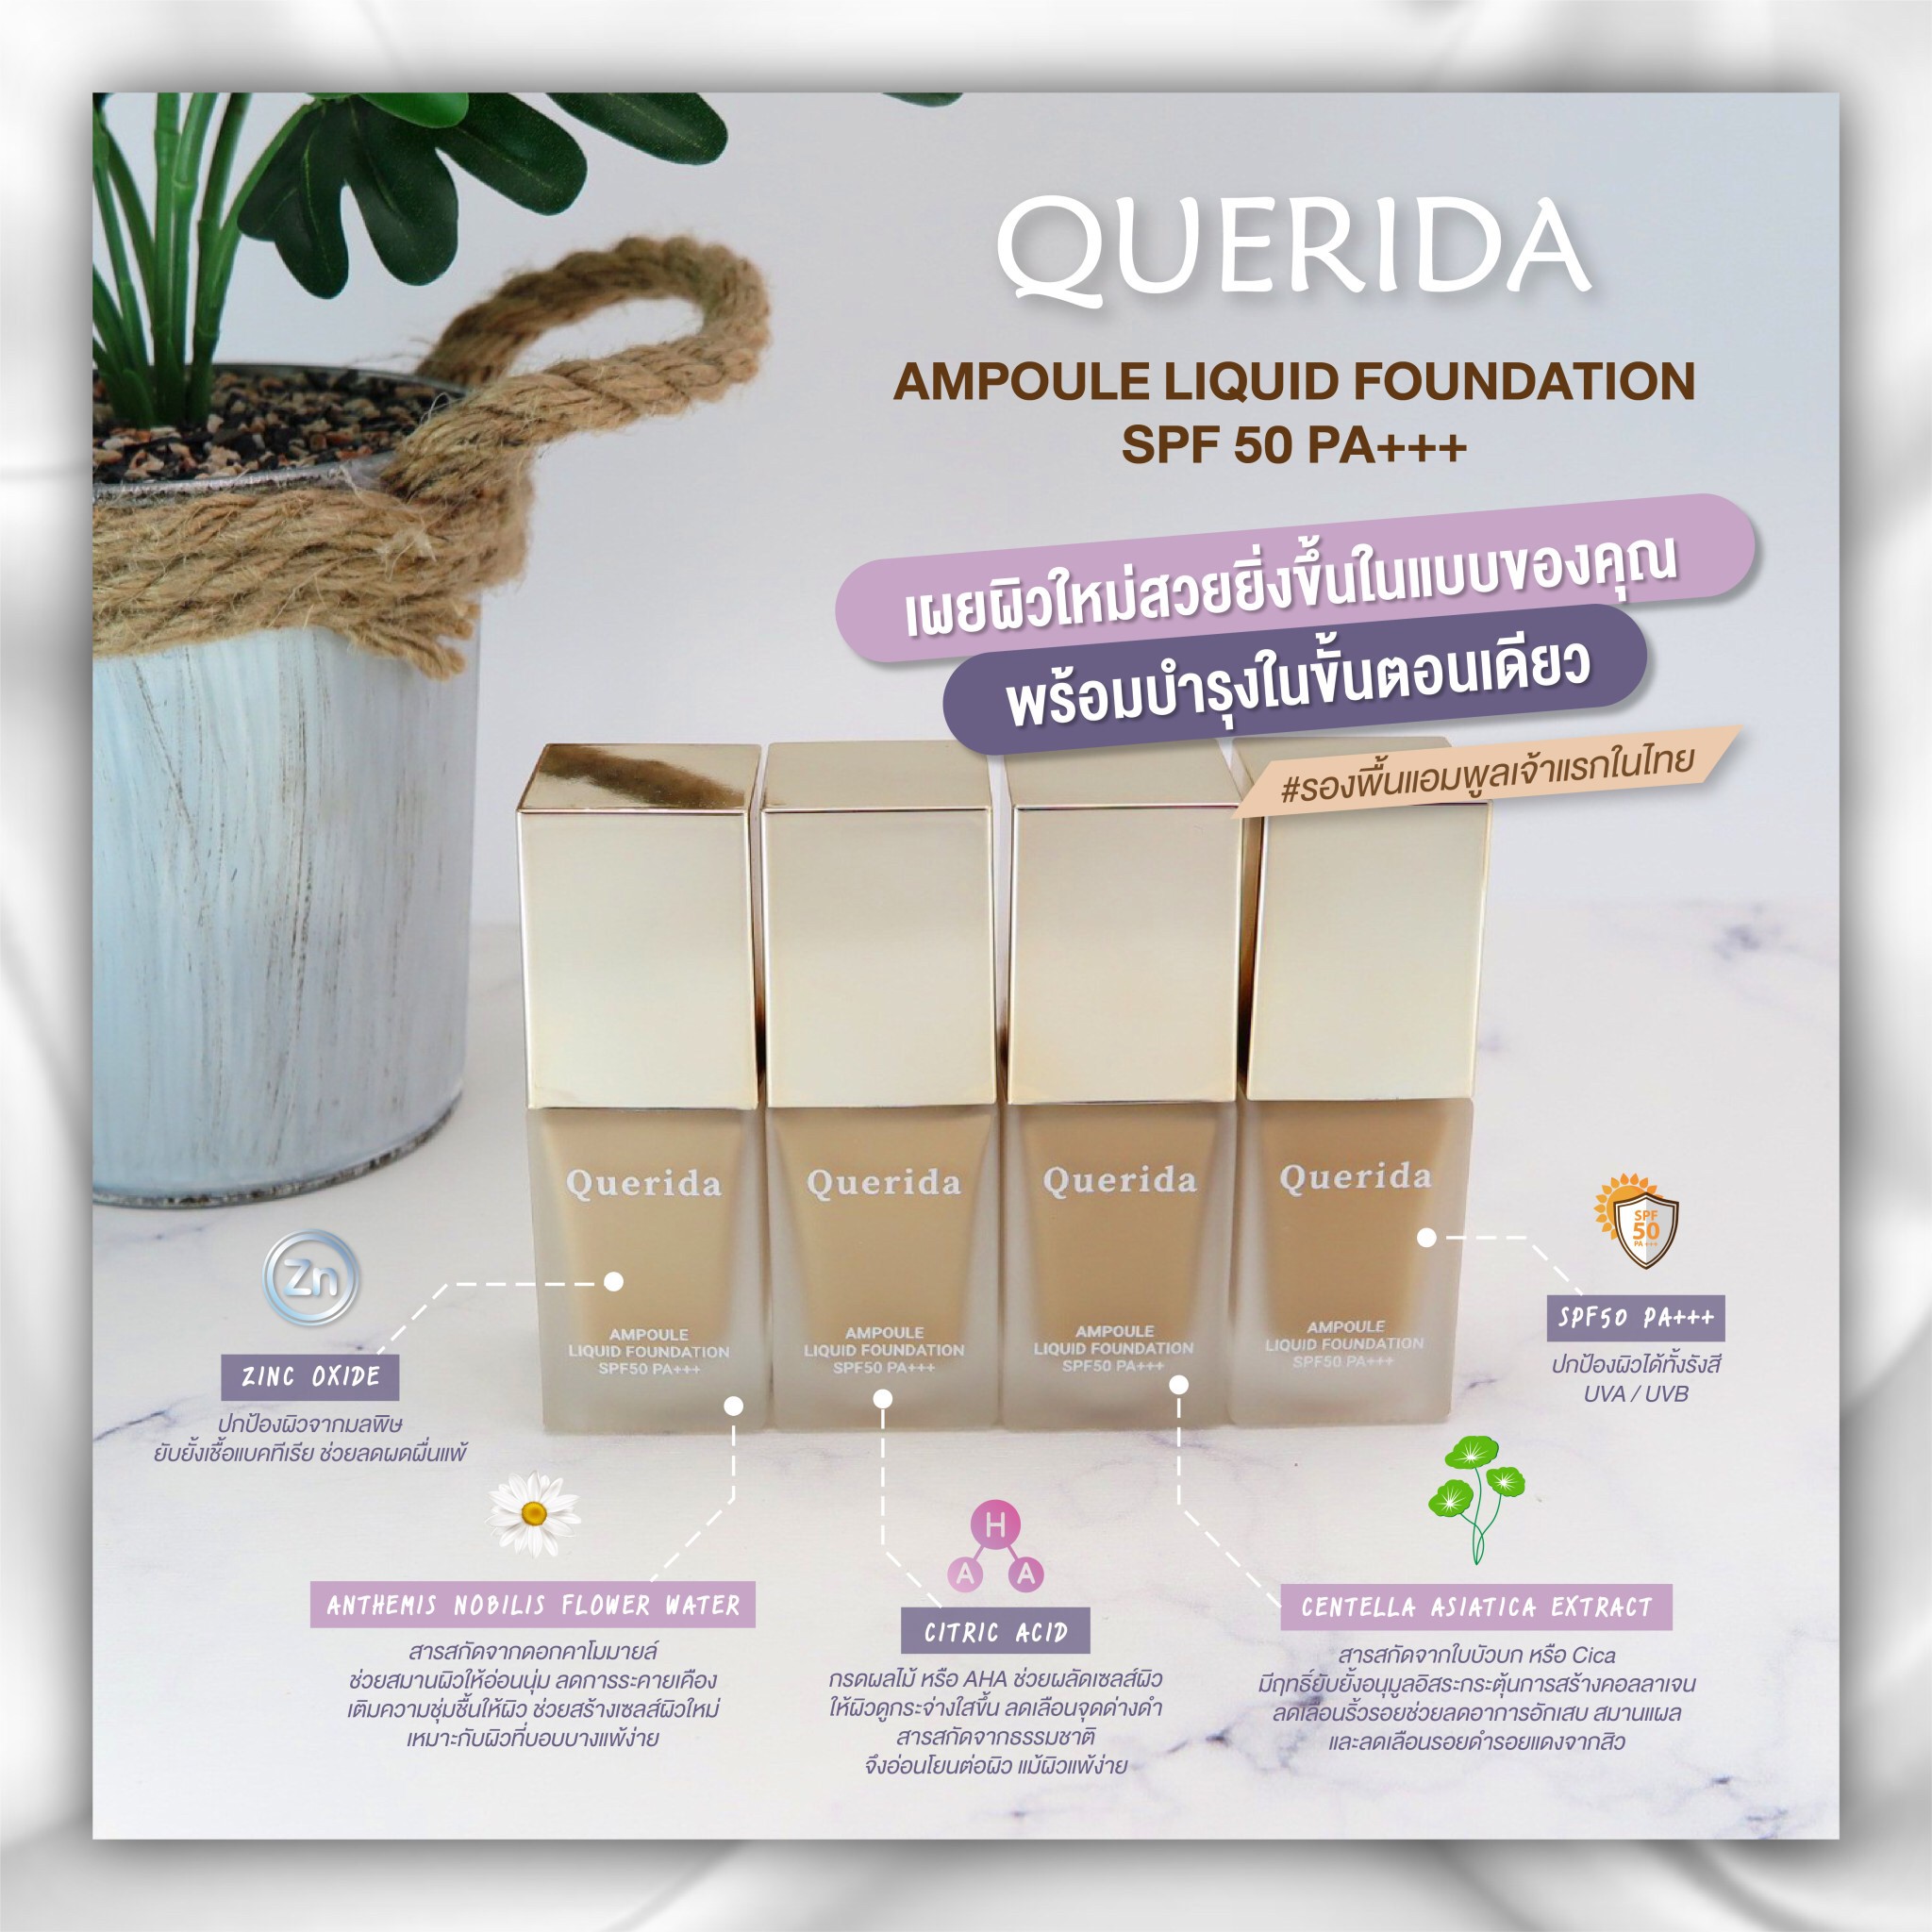 Querida, Querida รีวิว, Querida ราคา, Querida Ampoule Liquid Foundation, Querida Ampoule Liquid Foundation SPF50 PA+++, Querida Ampoule Liquid Foundation SPF50 PA+++ รีวิว, รองพื้นแอมพูล, รองพื้นแอมพูลเจ้าแรกในไทย, รองพื้น, แอมพูล, Ampoule, Foundation